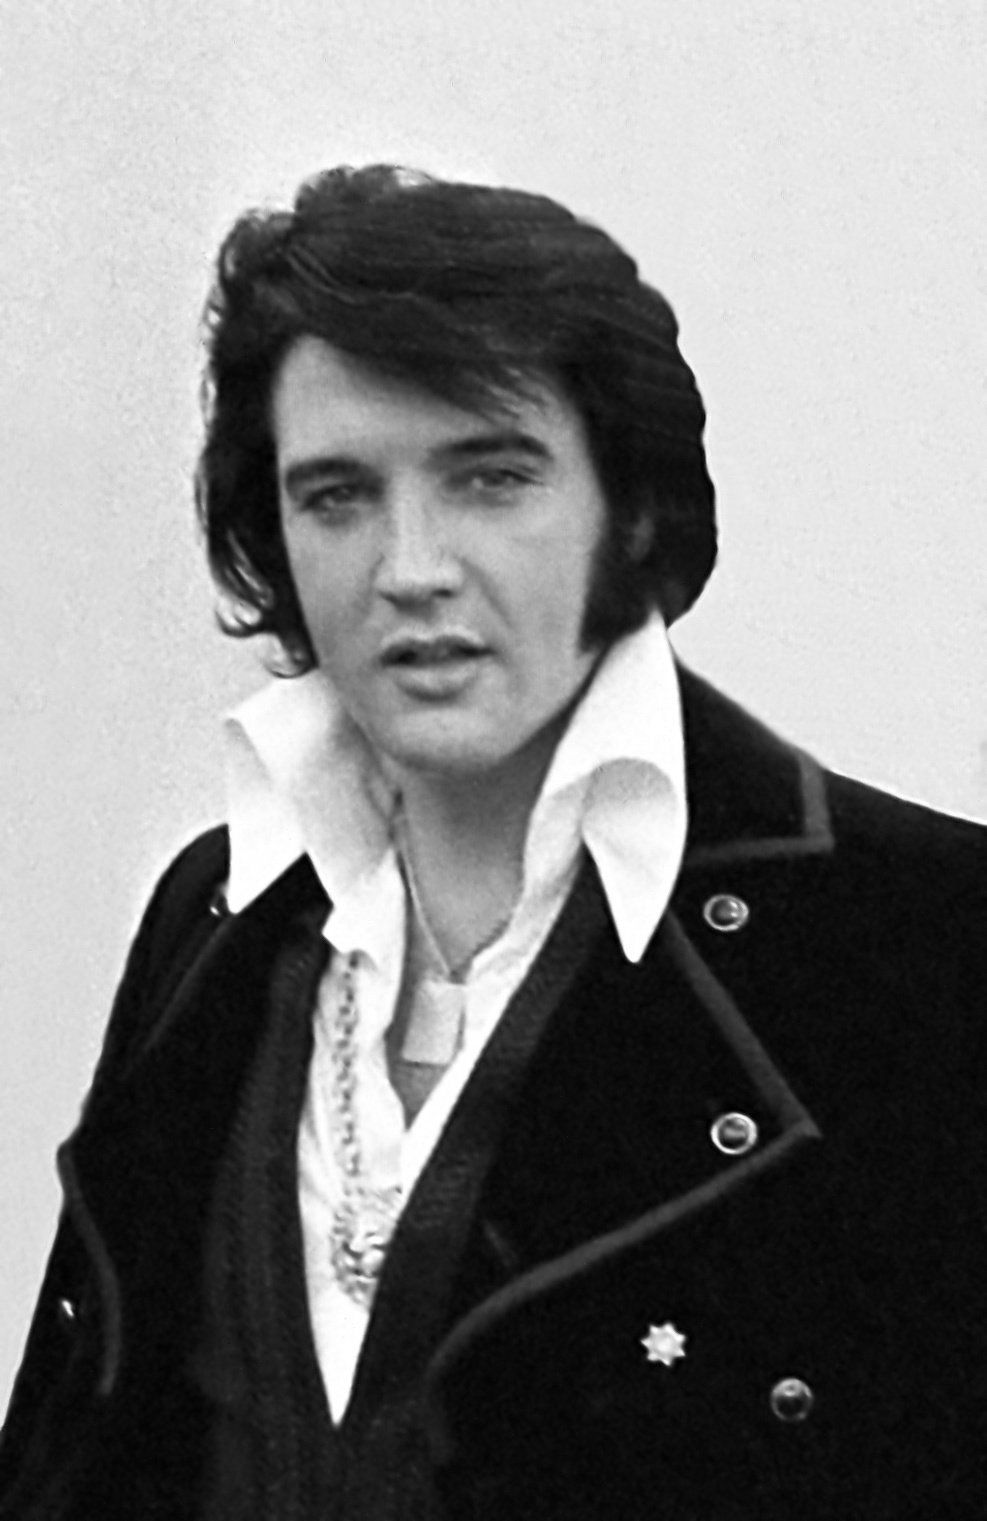 Videozapis Elvisa kako pjeva 'Uvijek na moj um' u kombinaciji s snimkama obitelji rijetkog Presleyja